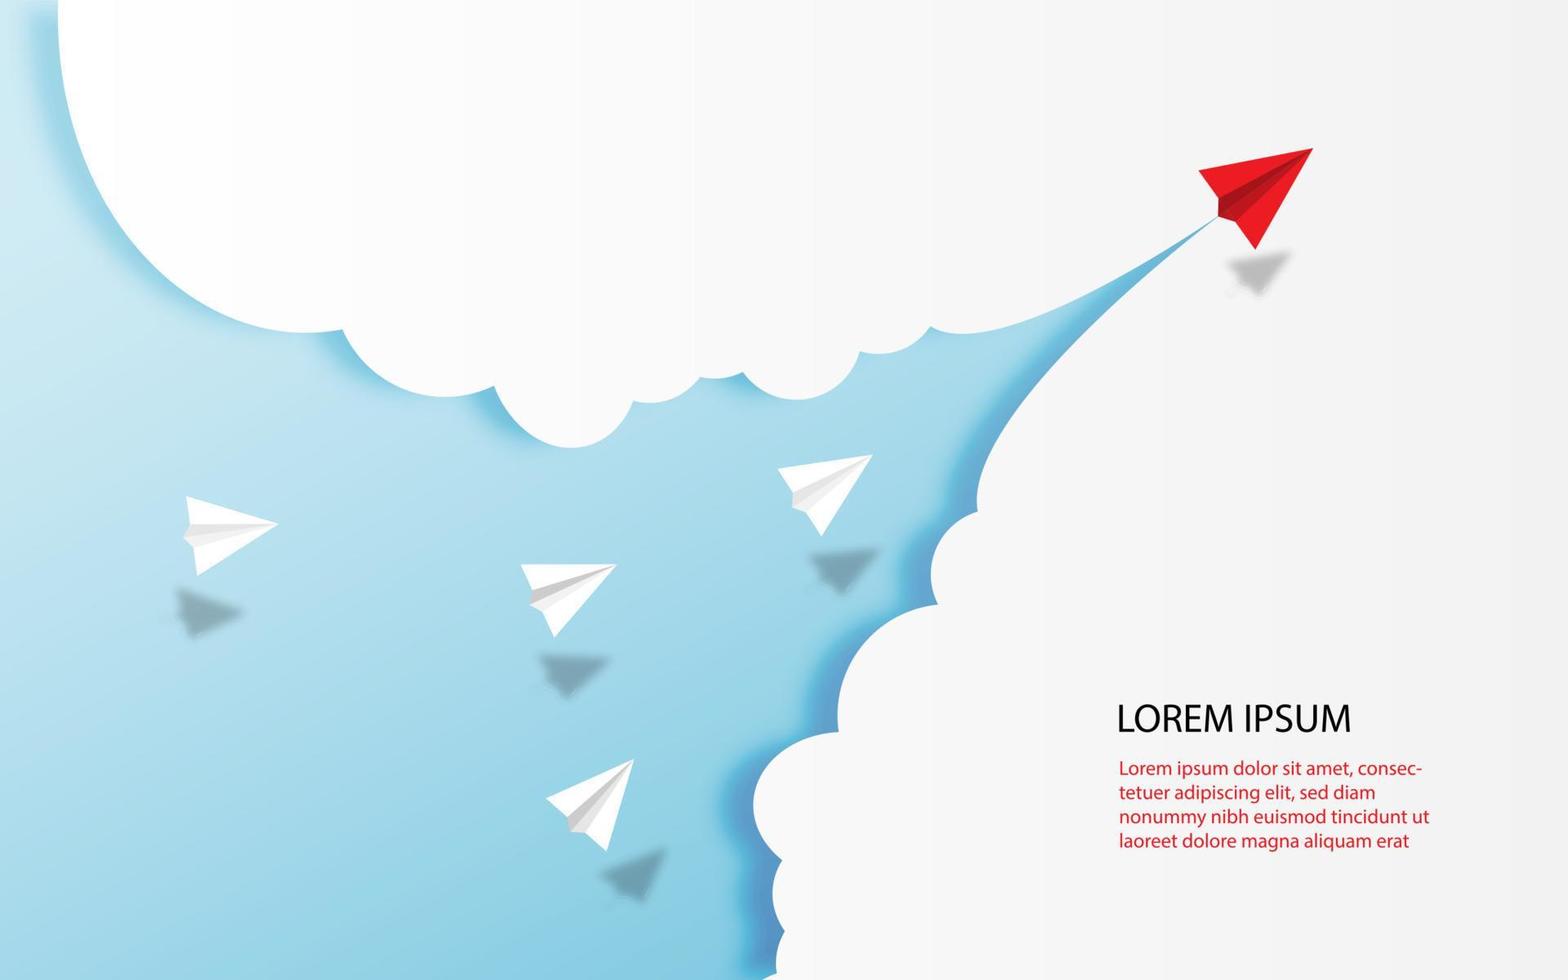 vitt och rött papper flygplan ledare flyger tillsammans på blå himmel på moln bakgrund. kreativa koncept idé av affärsframgång och ledarskap i papper hantverk konst stil design .vector illustration vektor